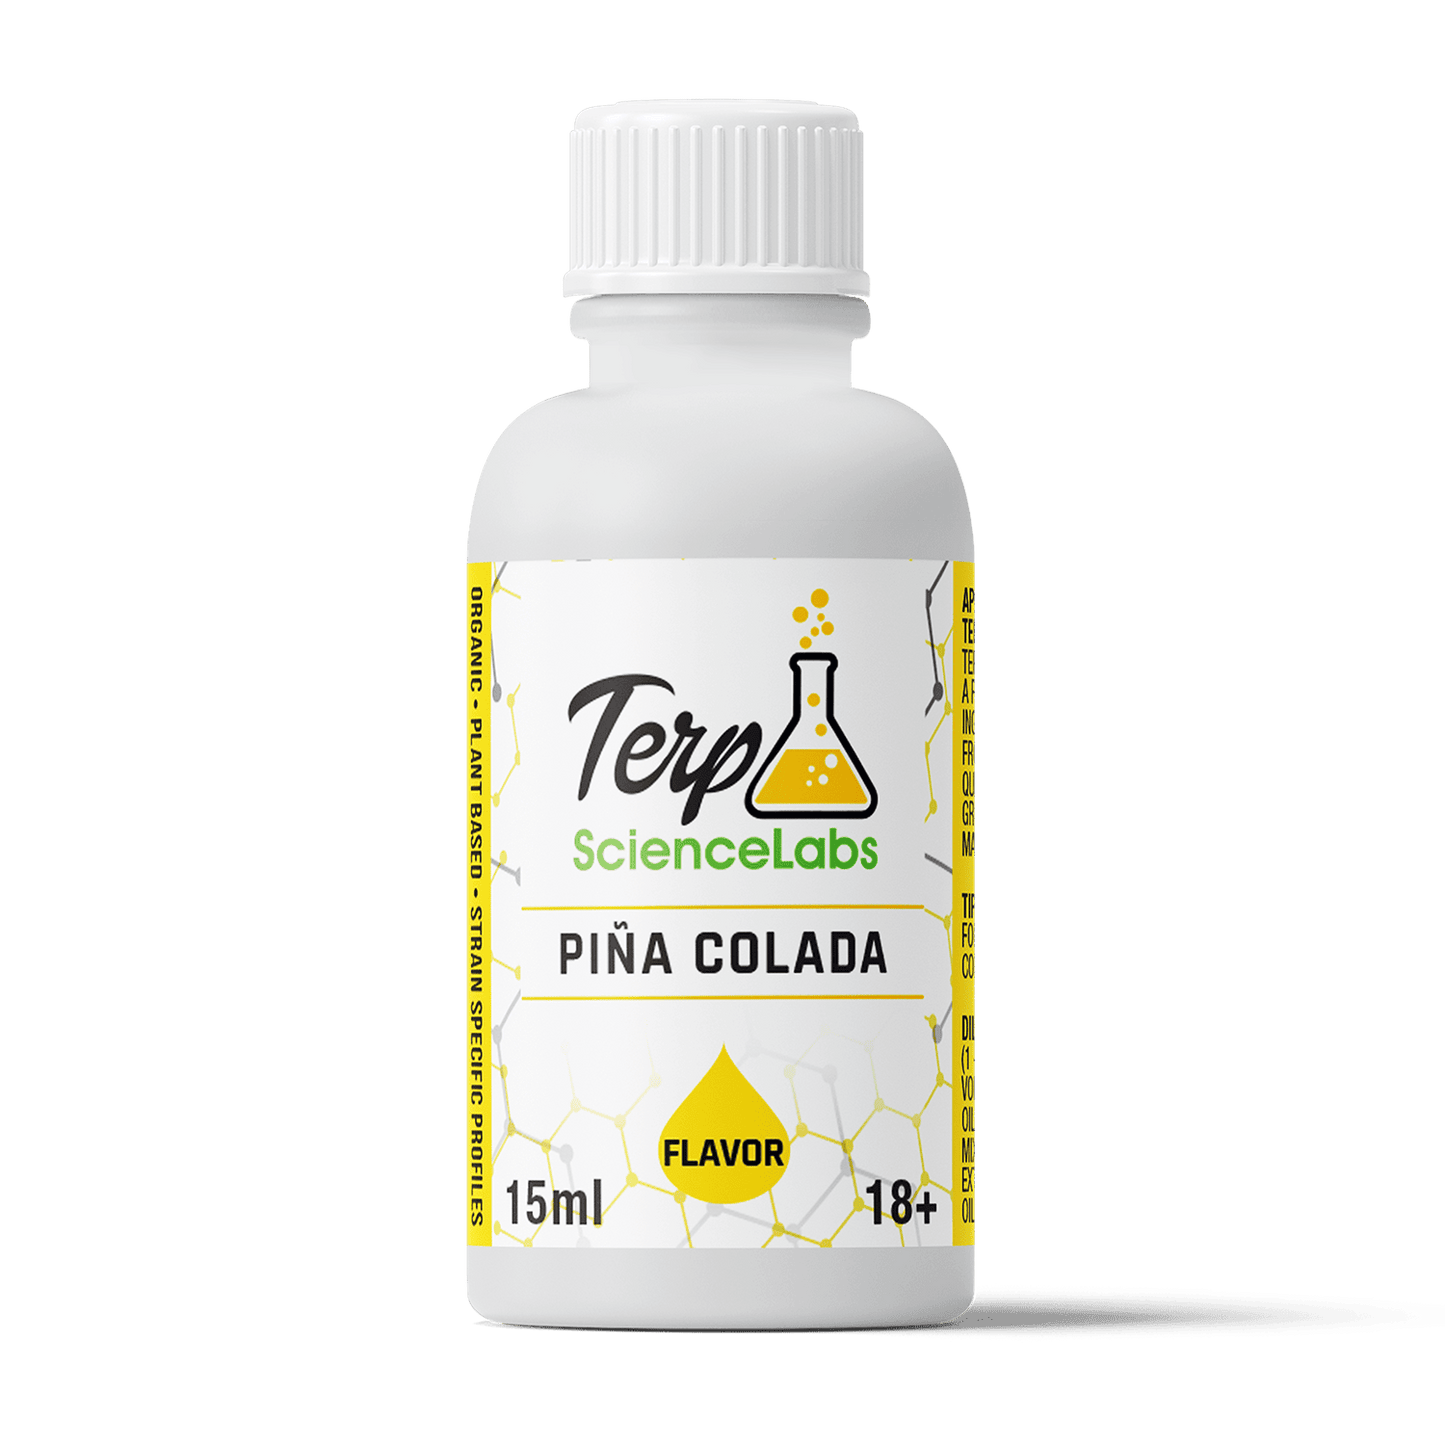 Pina Colada Flavor Profile